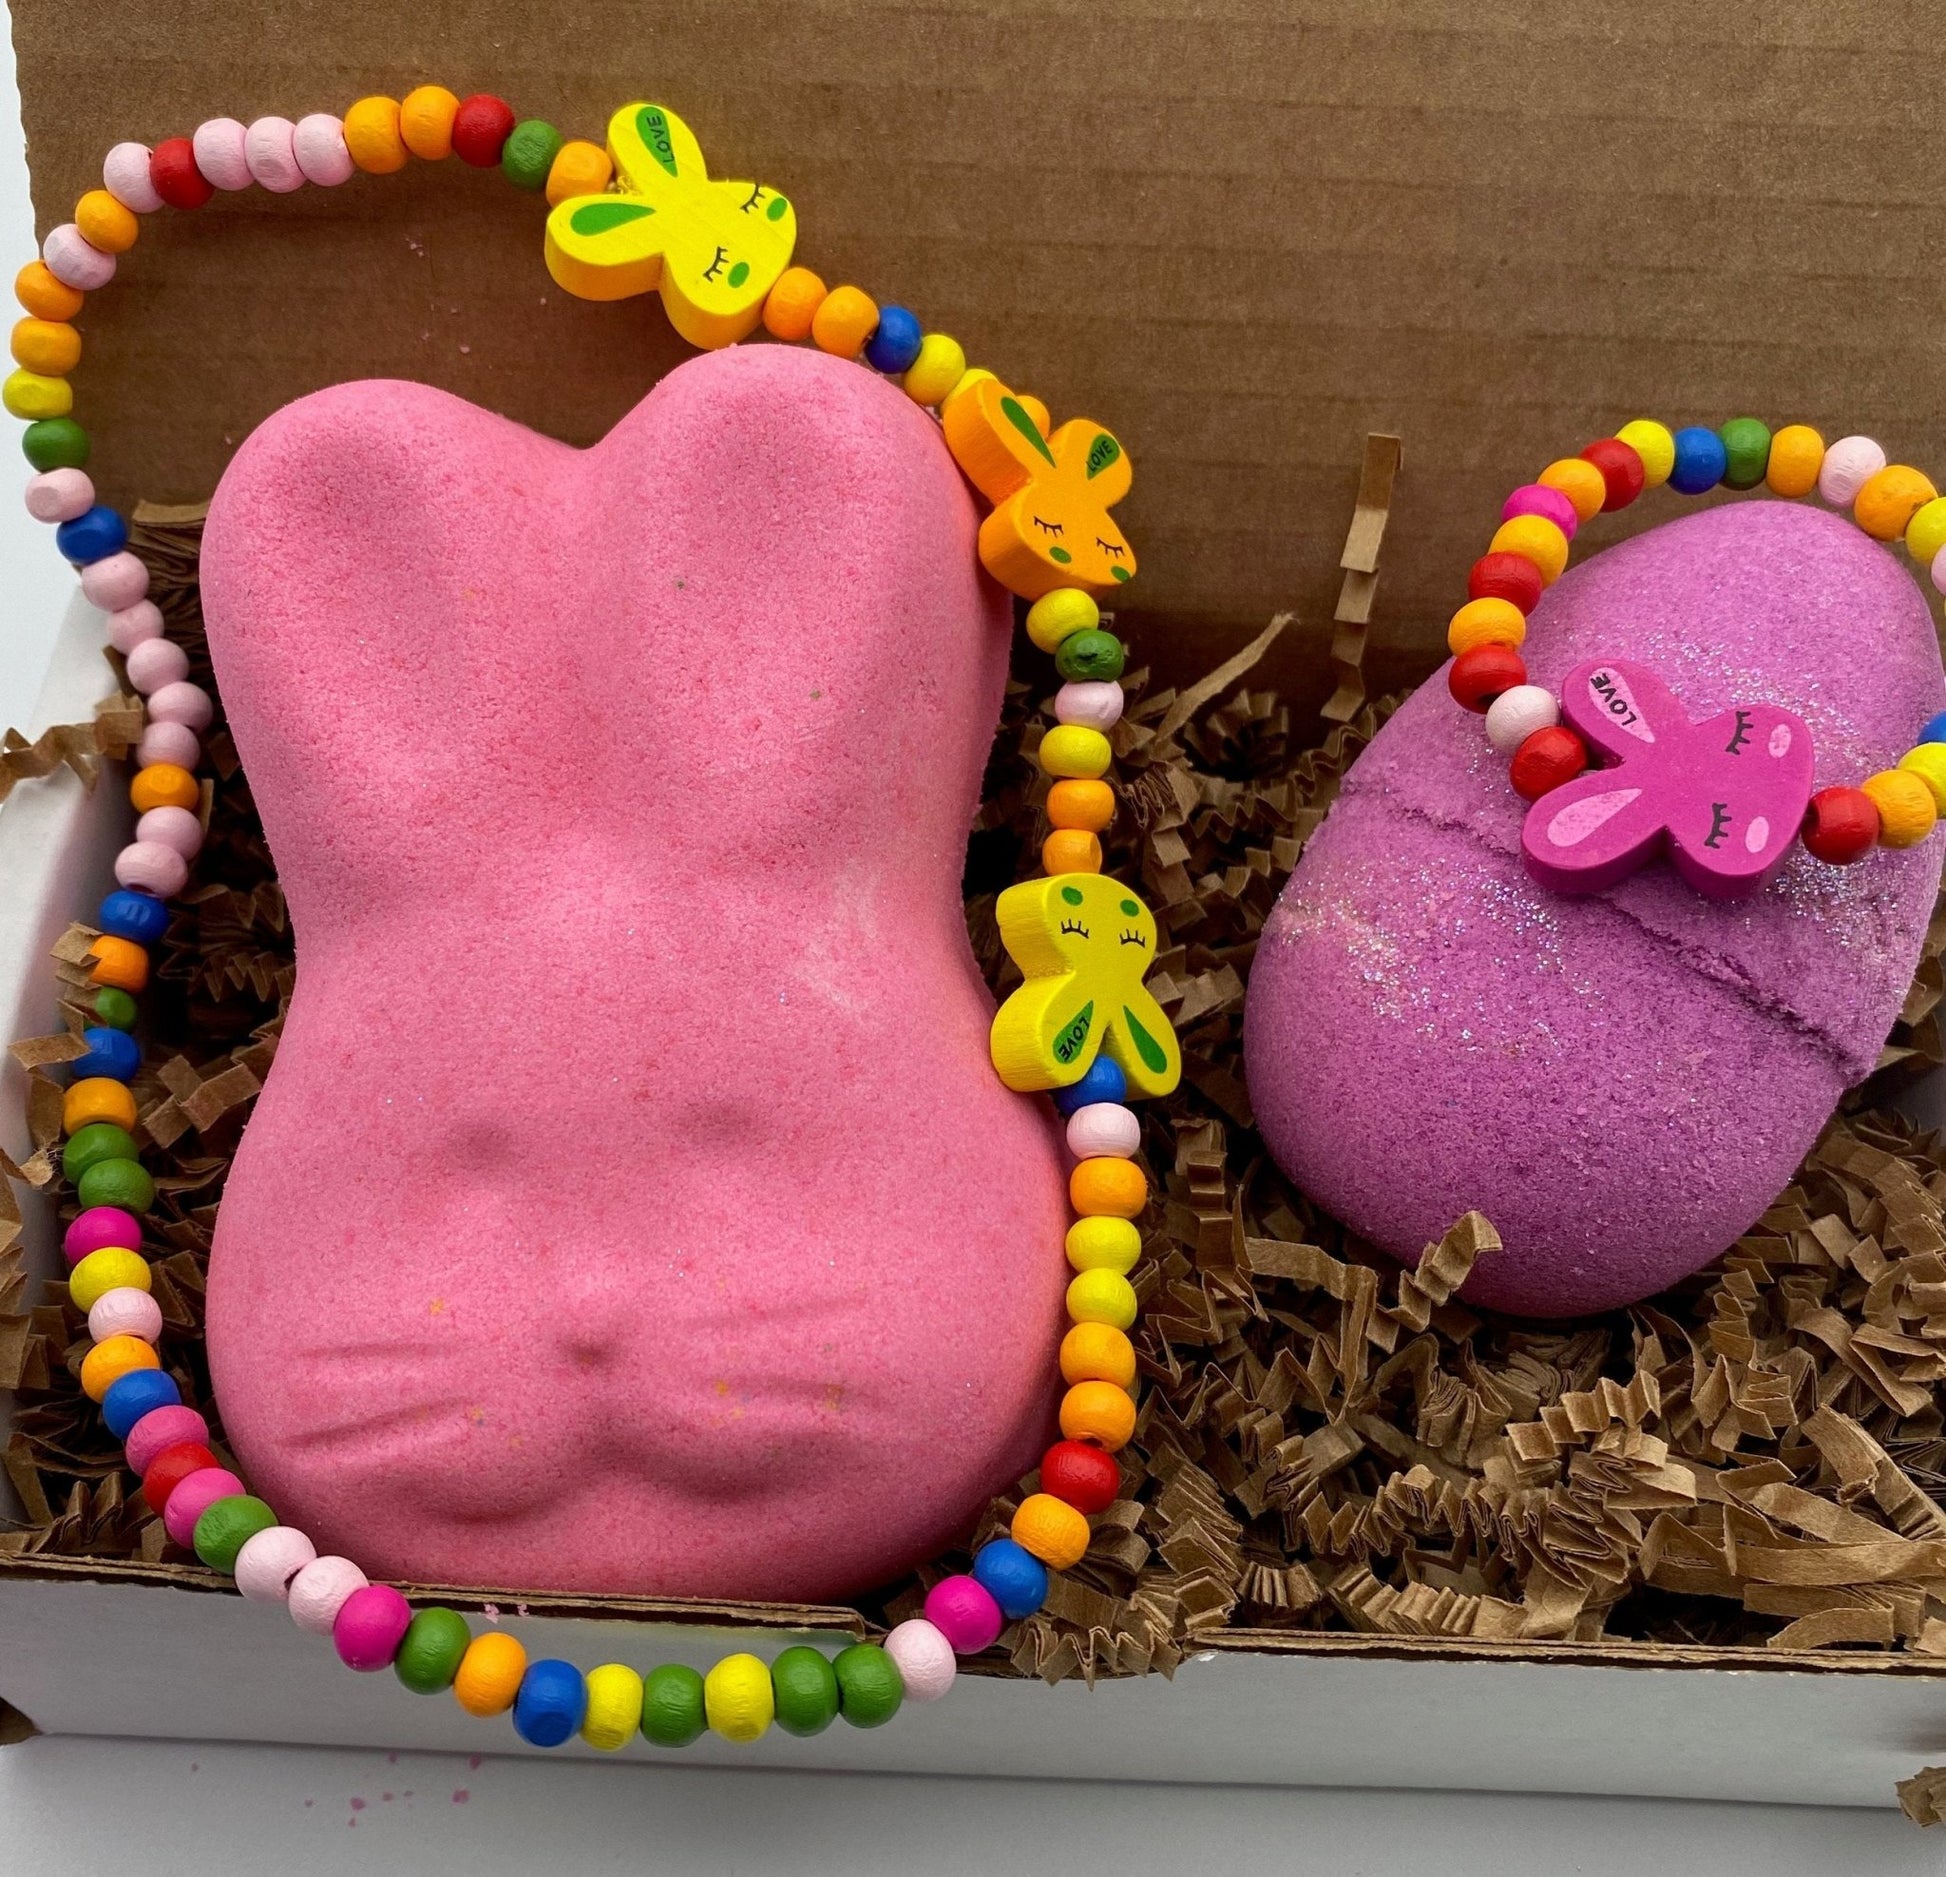 Bunny and Egg Bath Bombs with Toy Jewelry Inside - Berwyn Betty's Bath & Body Shop